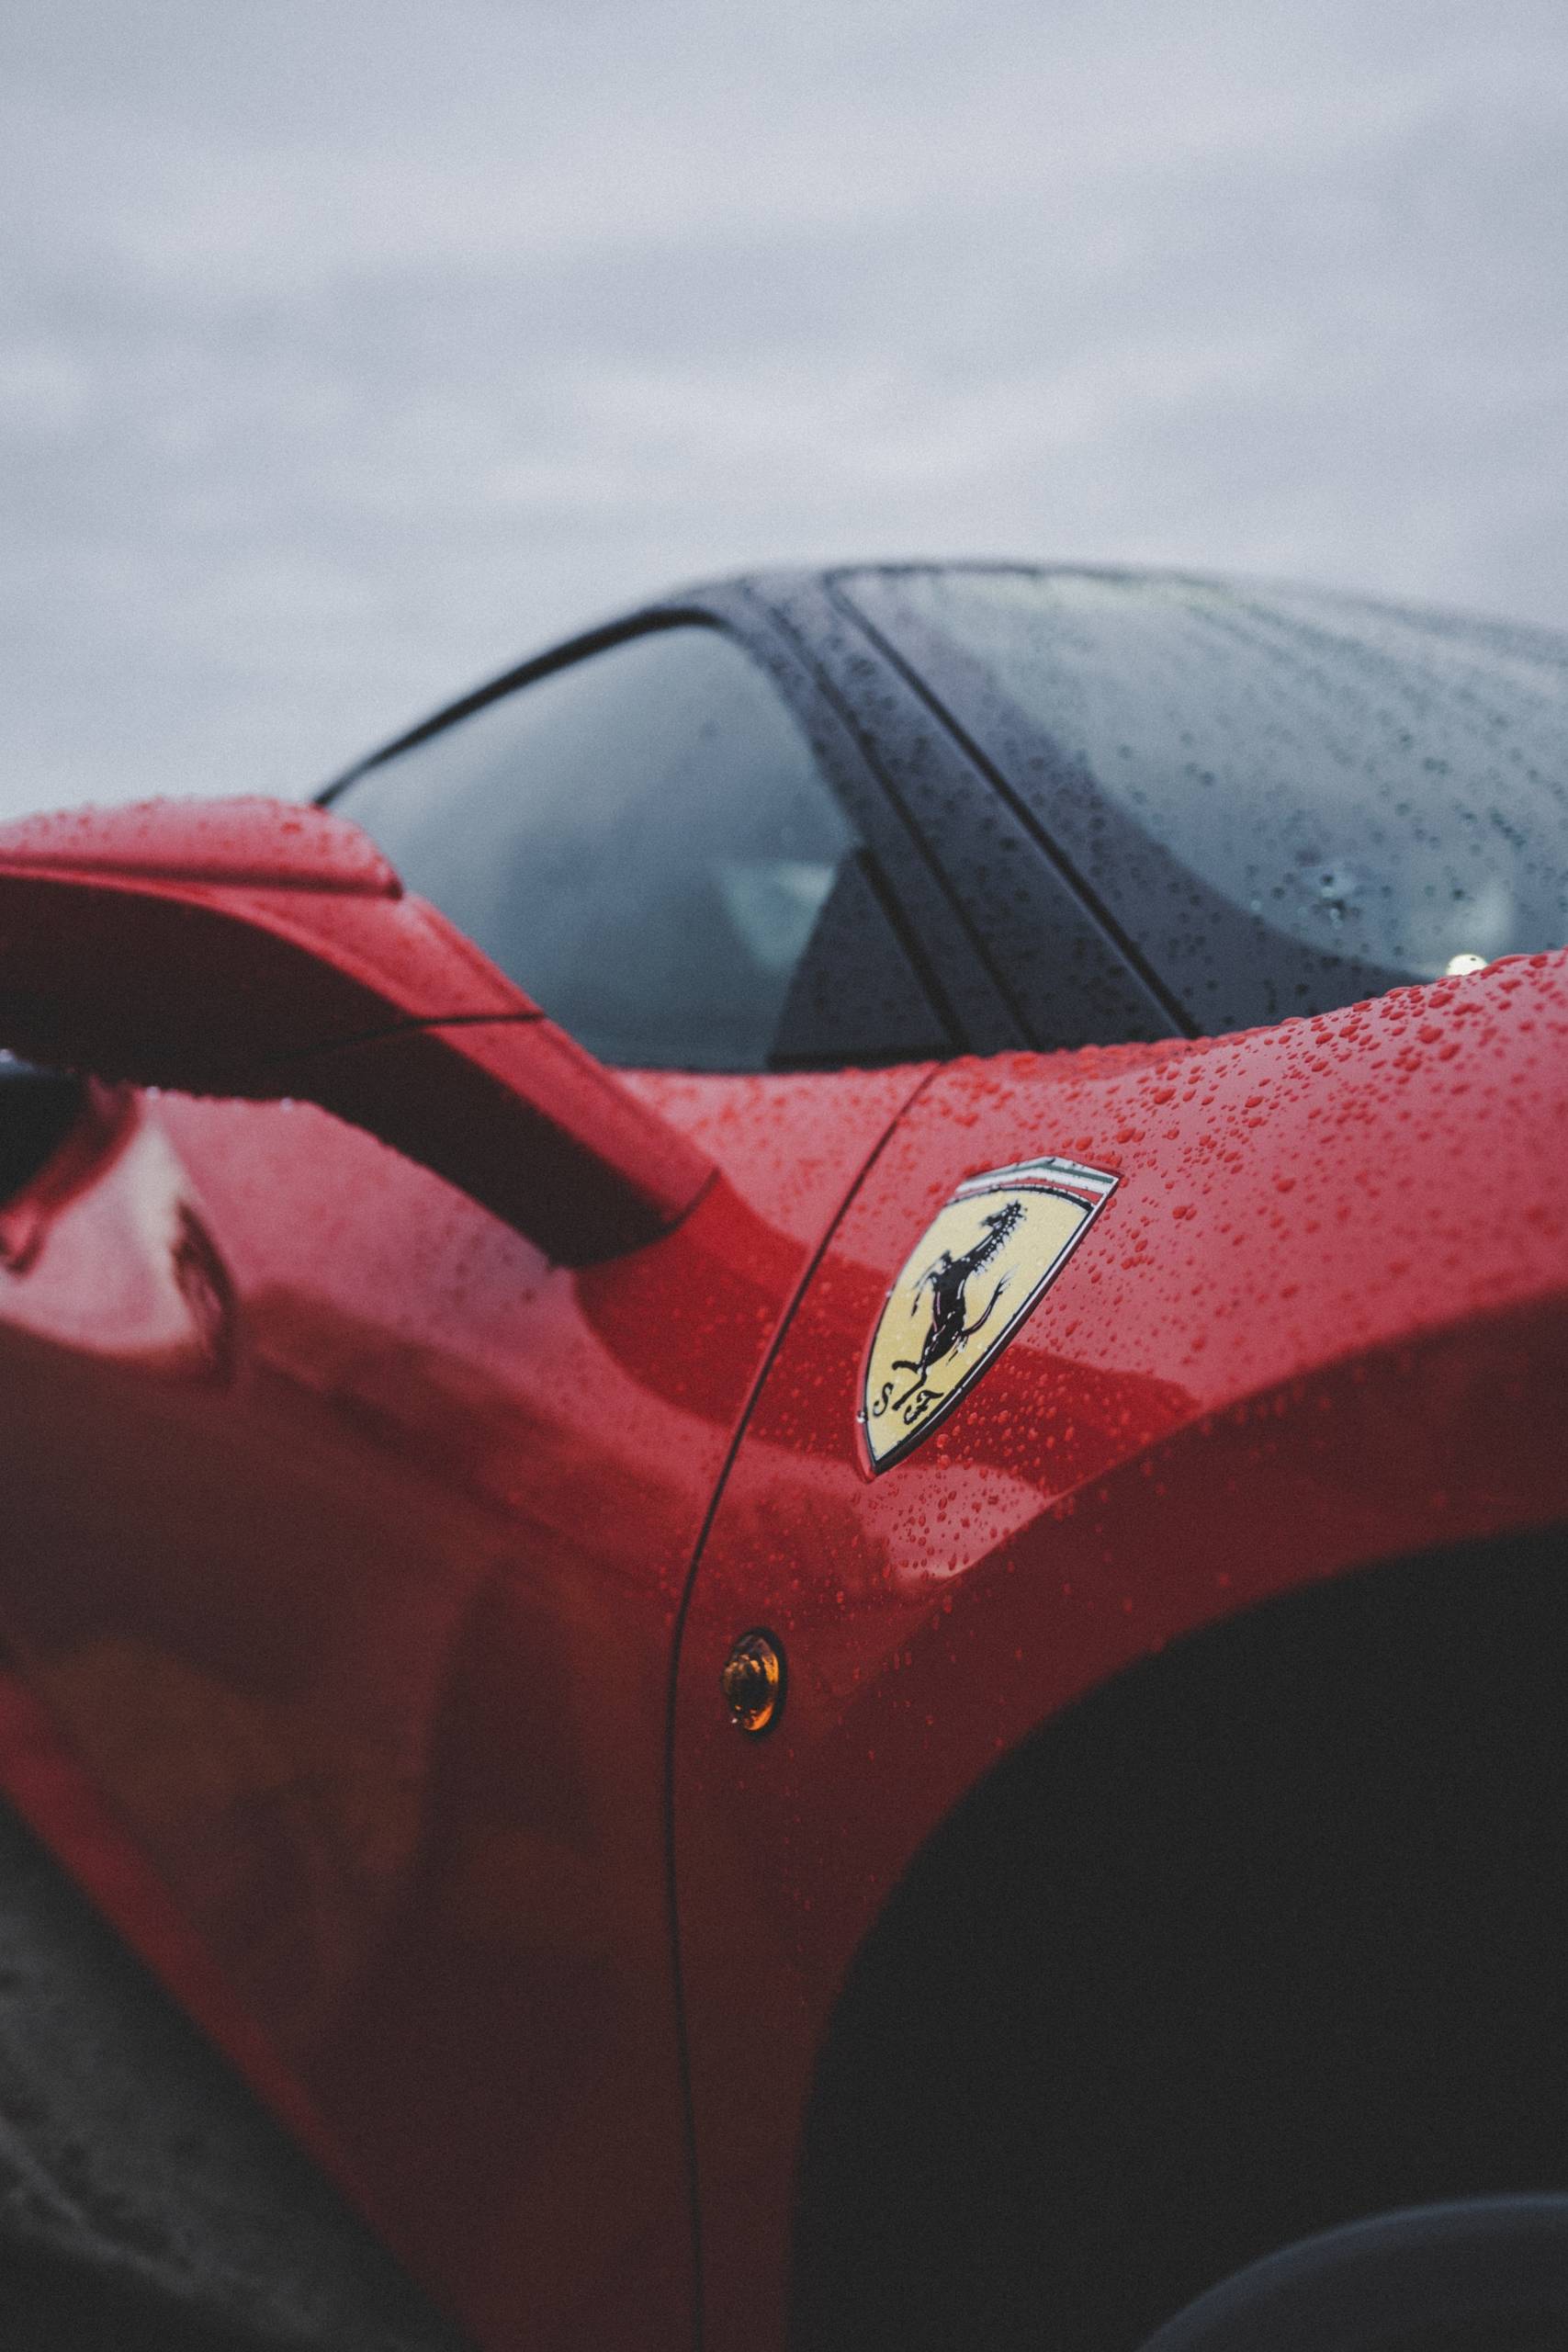 The Ferrari Portofino in all its beauty.